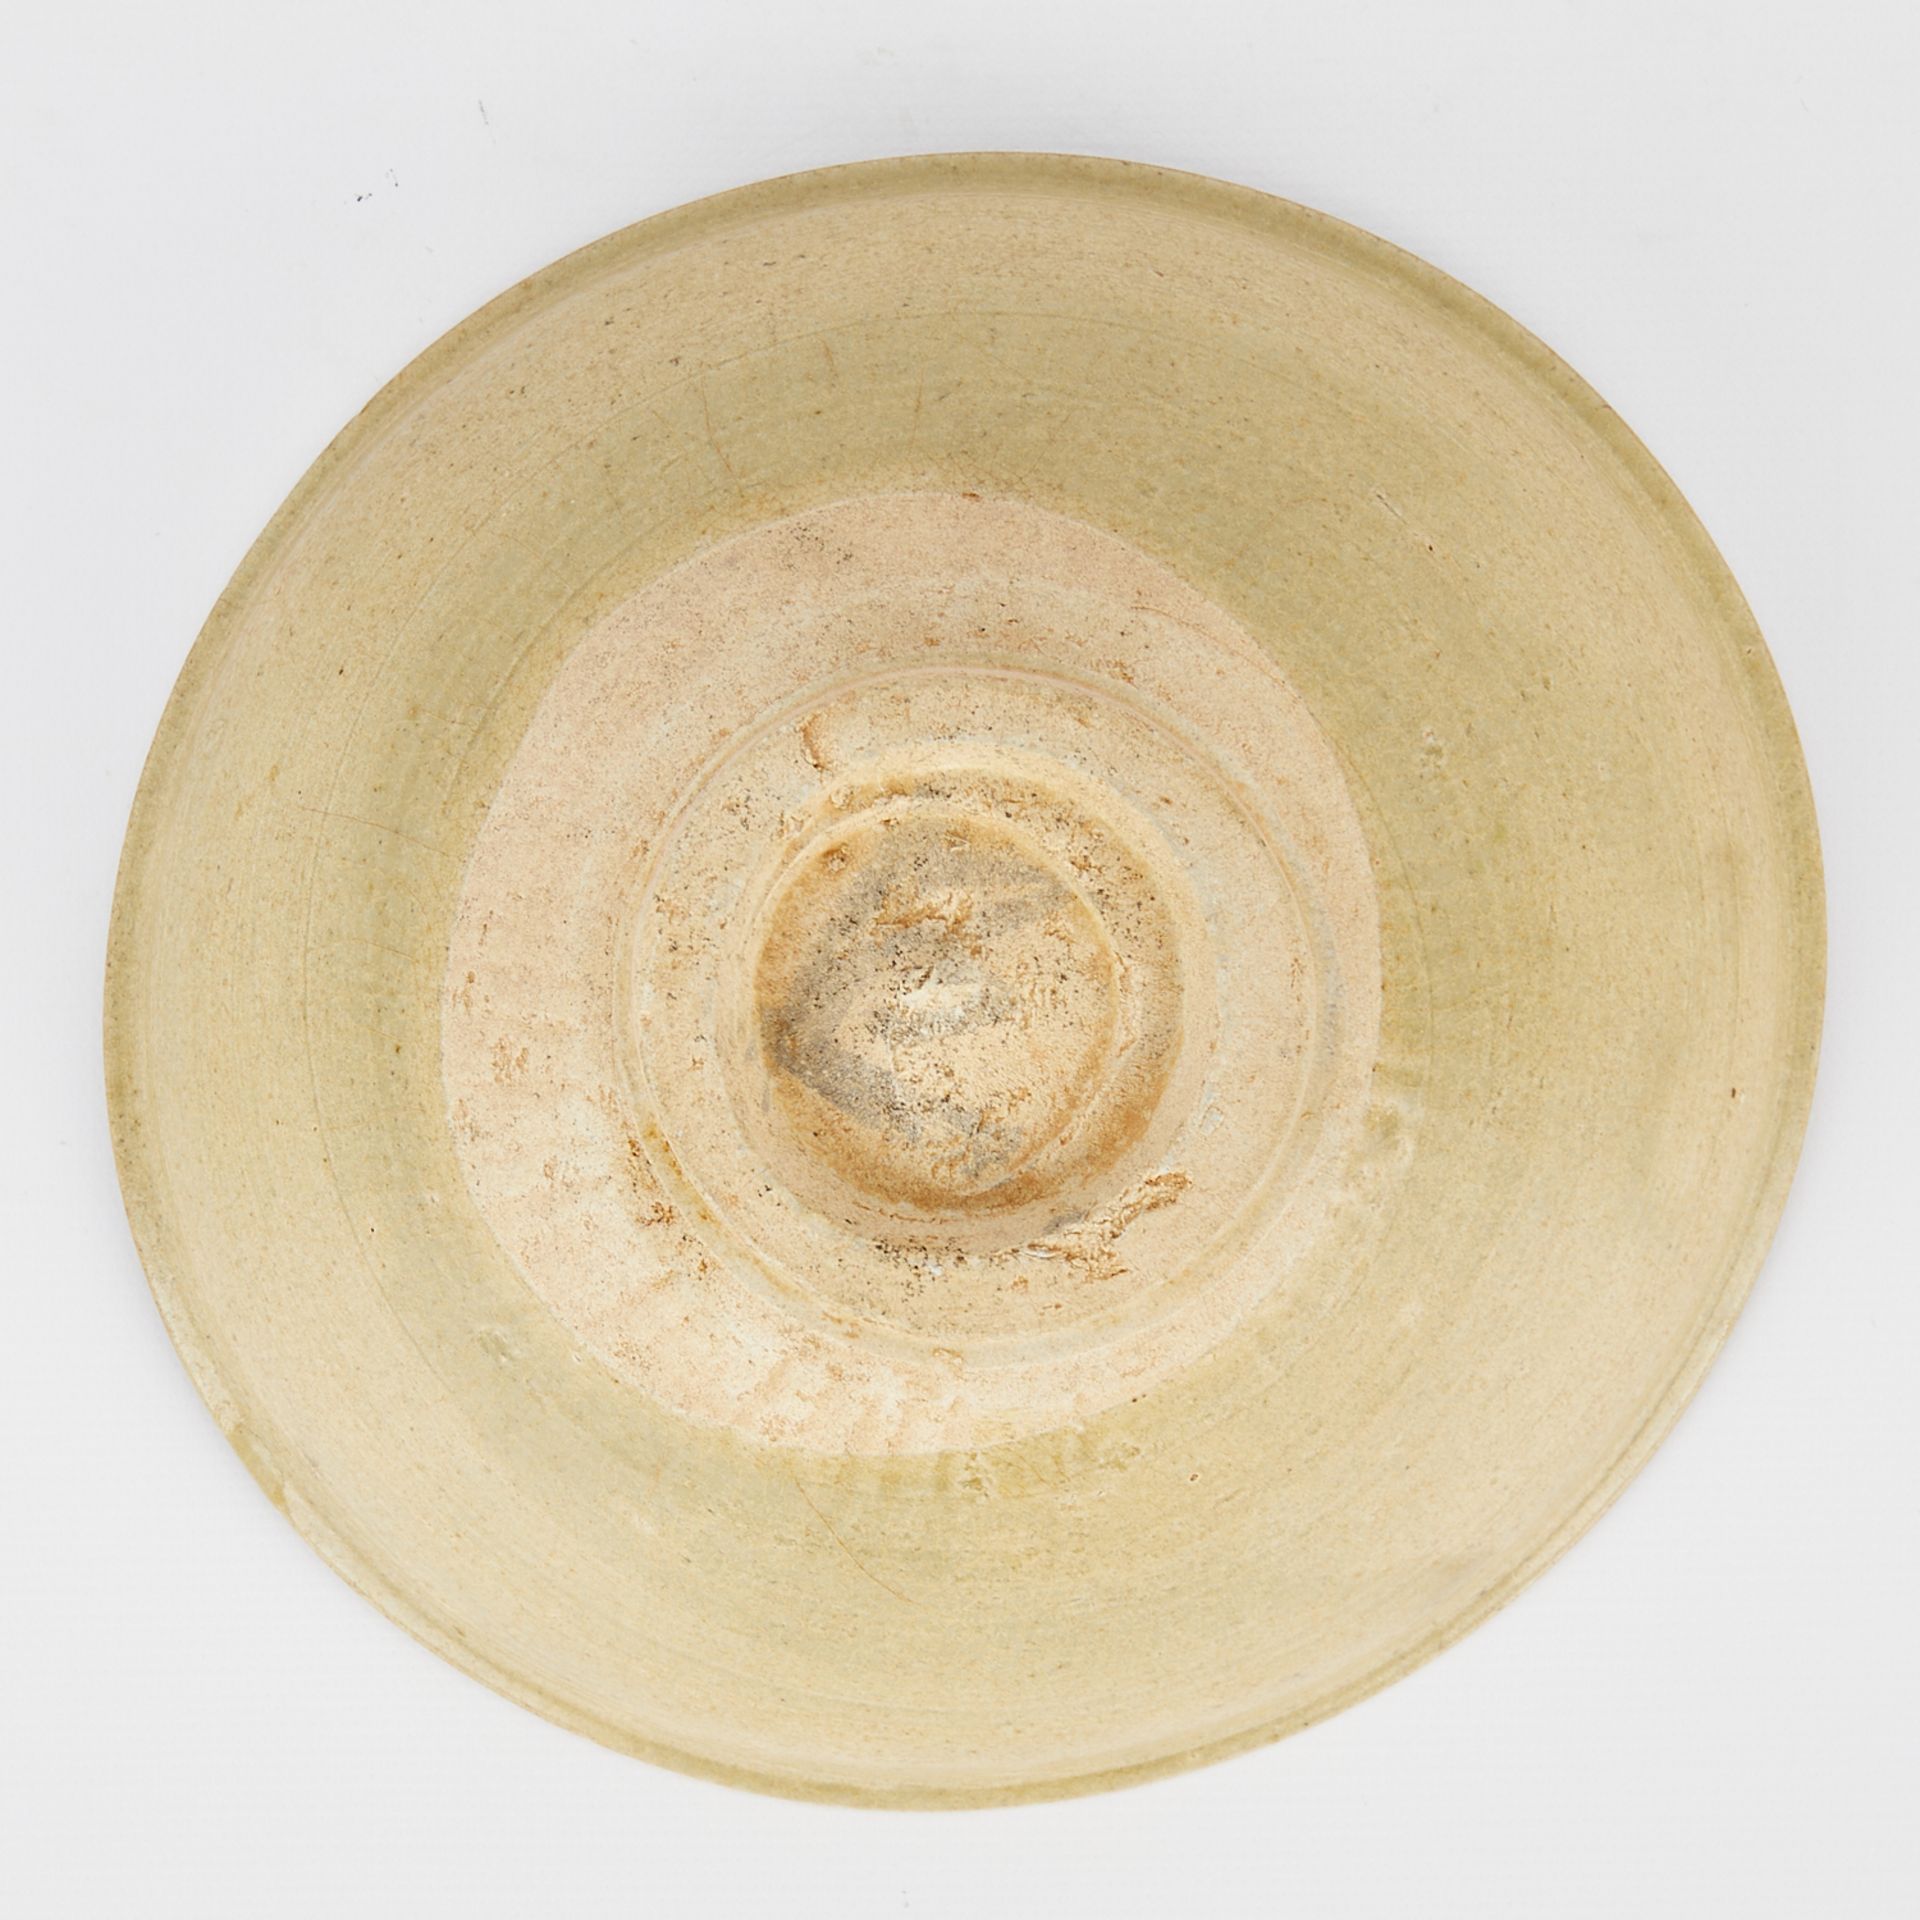 Chinese Song Celadon Glazed Ceramic Bowl - Image 7 of 8